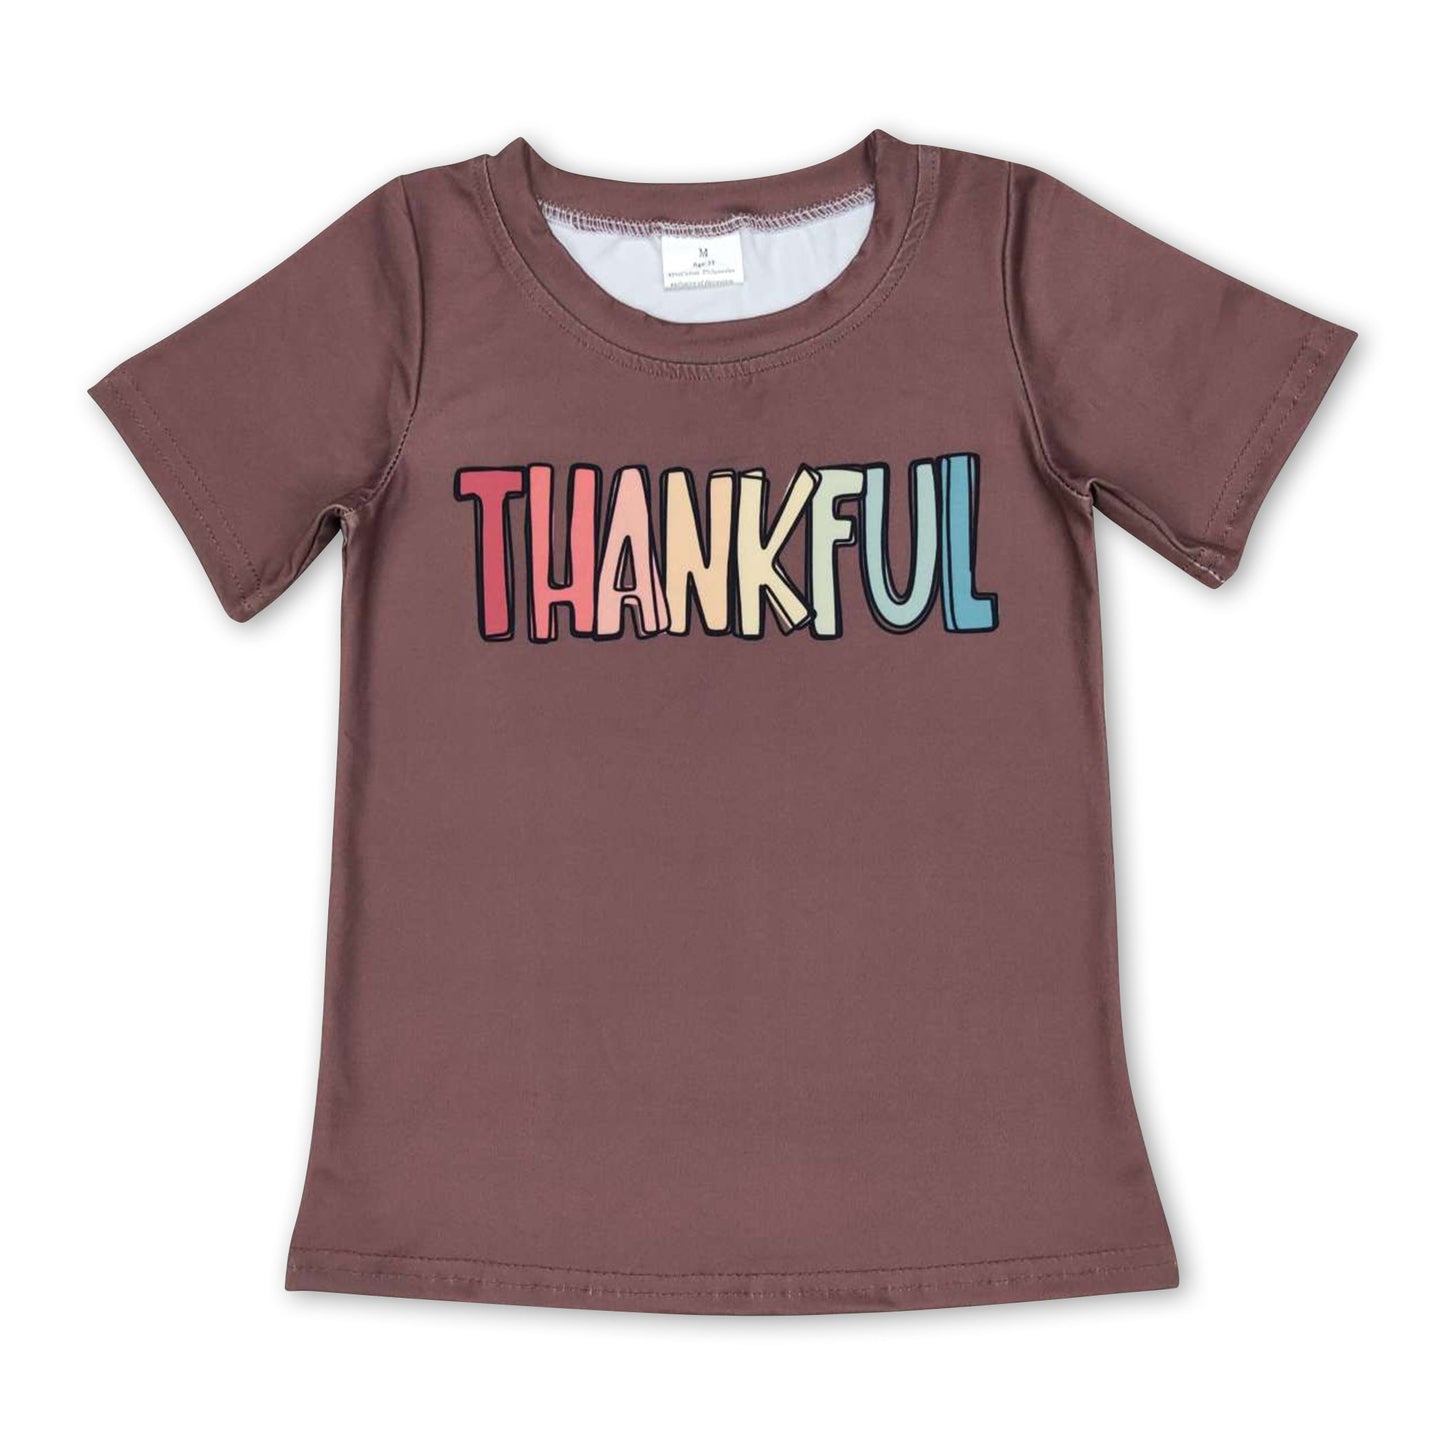 Thankful brown short sleeves baby kids Thanksgiving shirt